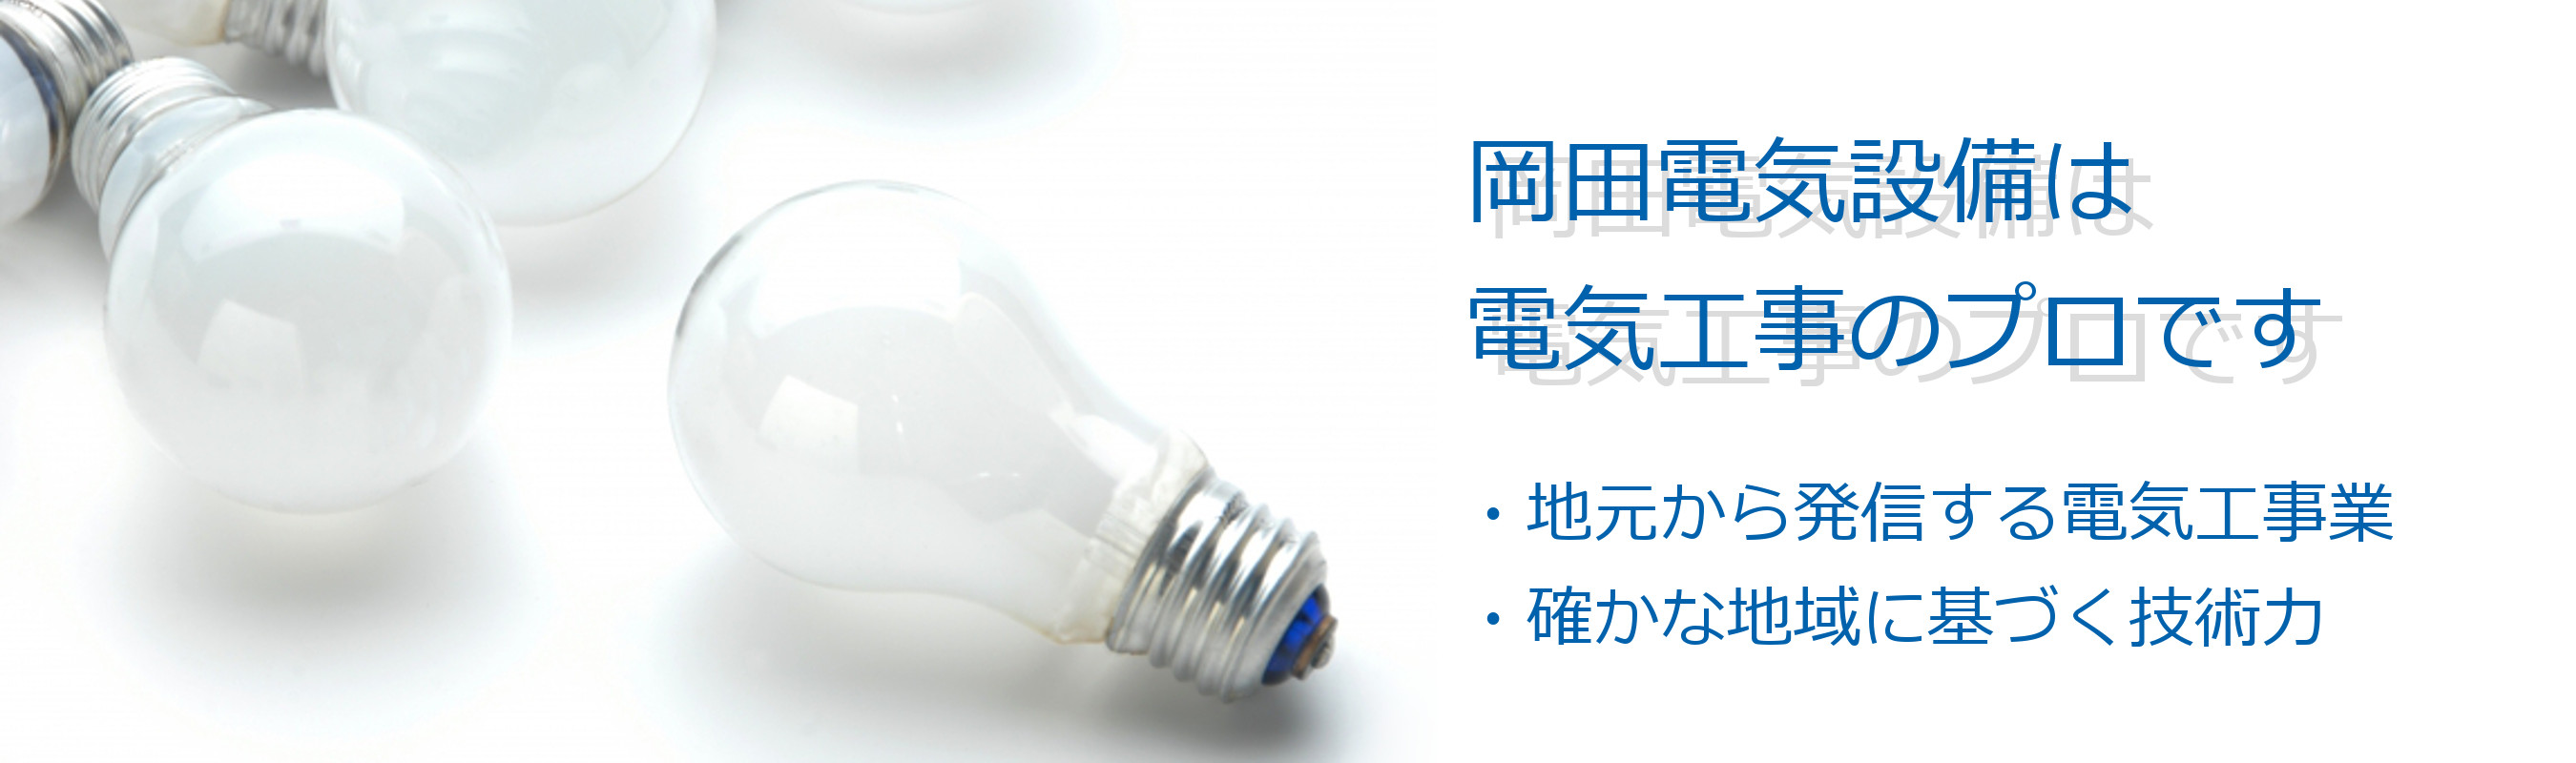 岡田電気設備は、電気工事のプロです。地域密着型の「電気工事屋さん」、確かな技術に基づく技術力